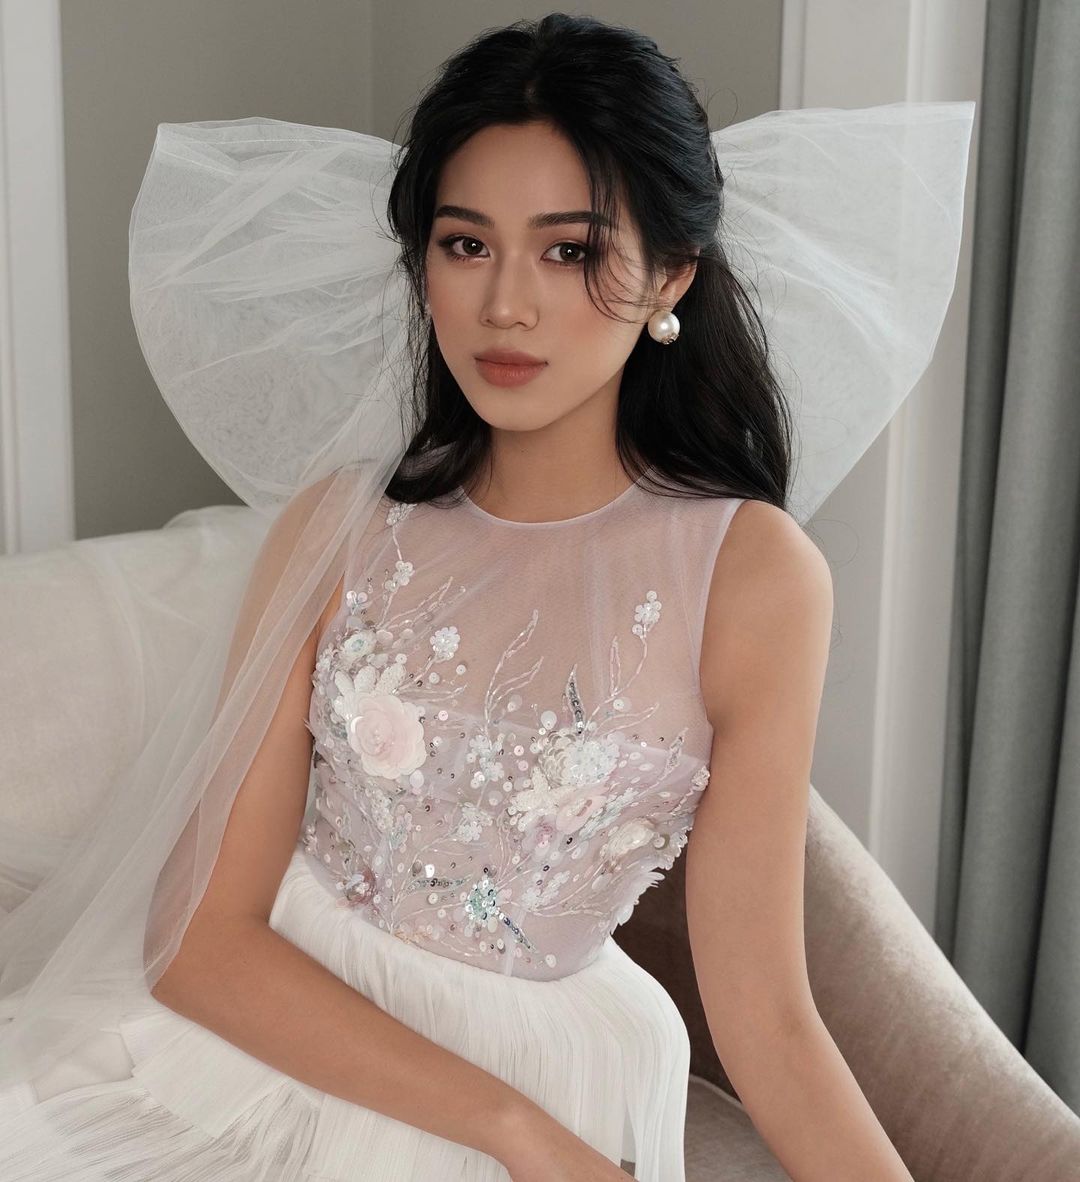 Trình tiếng Anh của Hoa hậu Việt thi HHTG: Lương Thùy Linh vượt Lan Khuê  - Ảnh 10